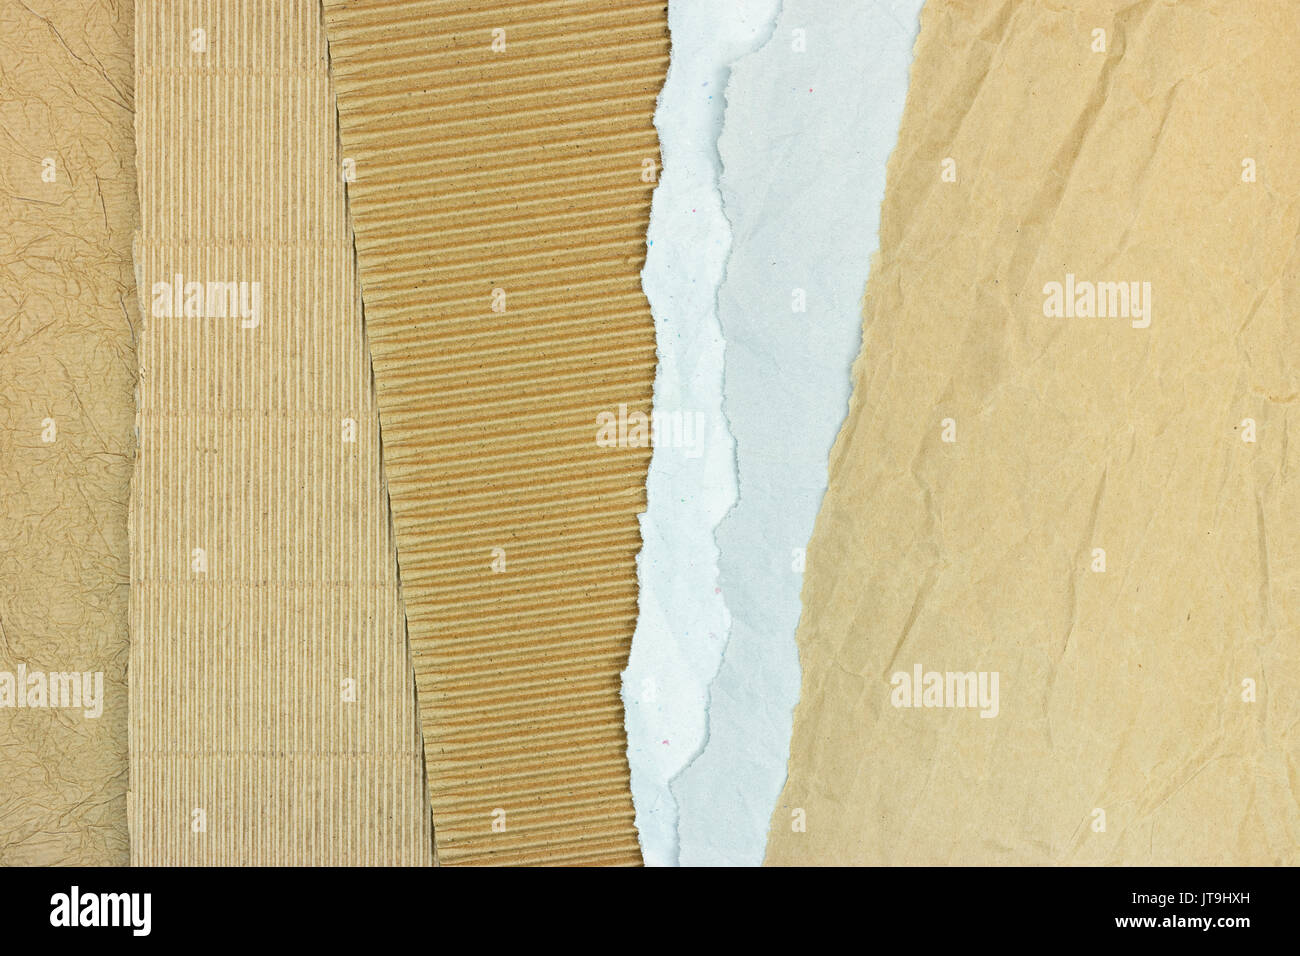 Stapel der braune Wellpappe und grauem Papier Blätter mit zerrissene Kanten Stockfoto